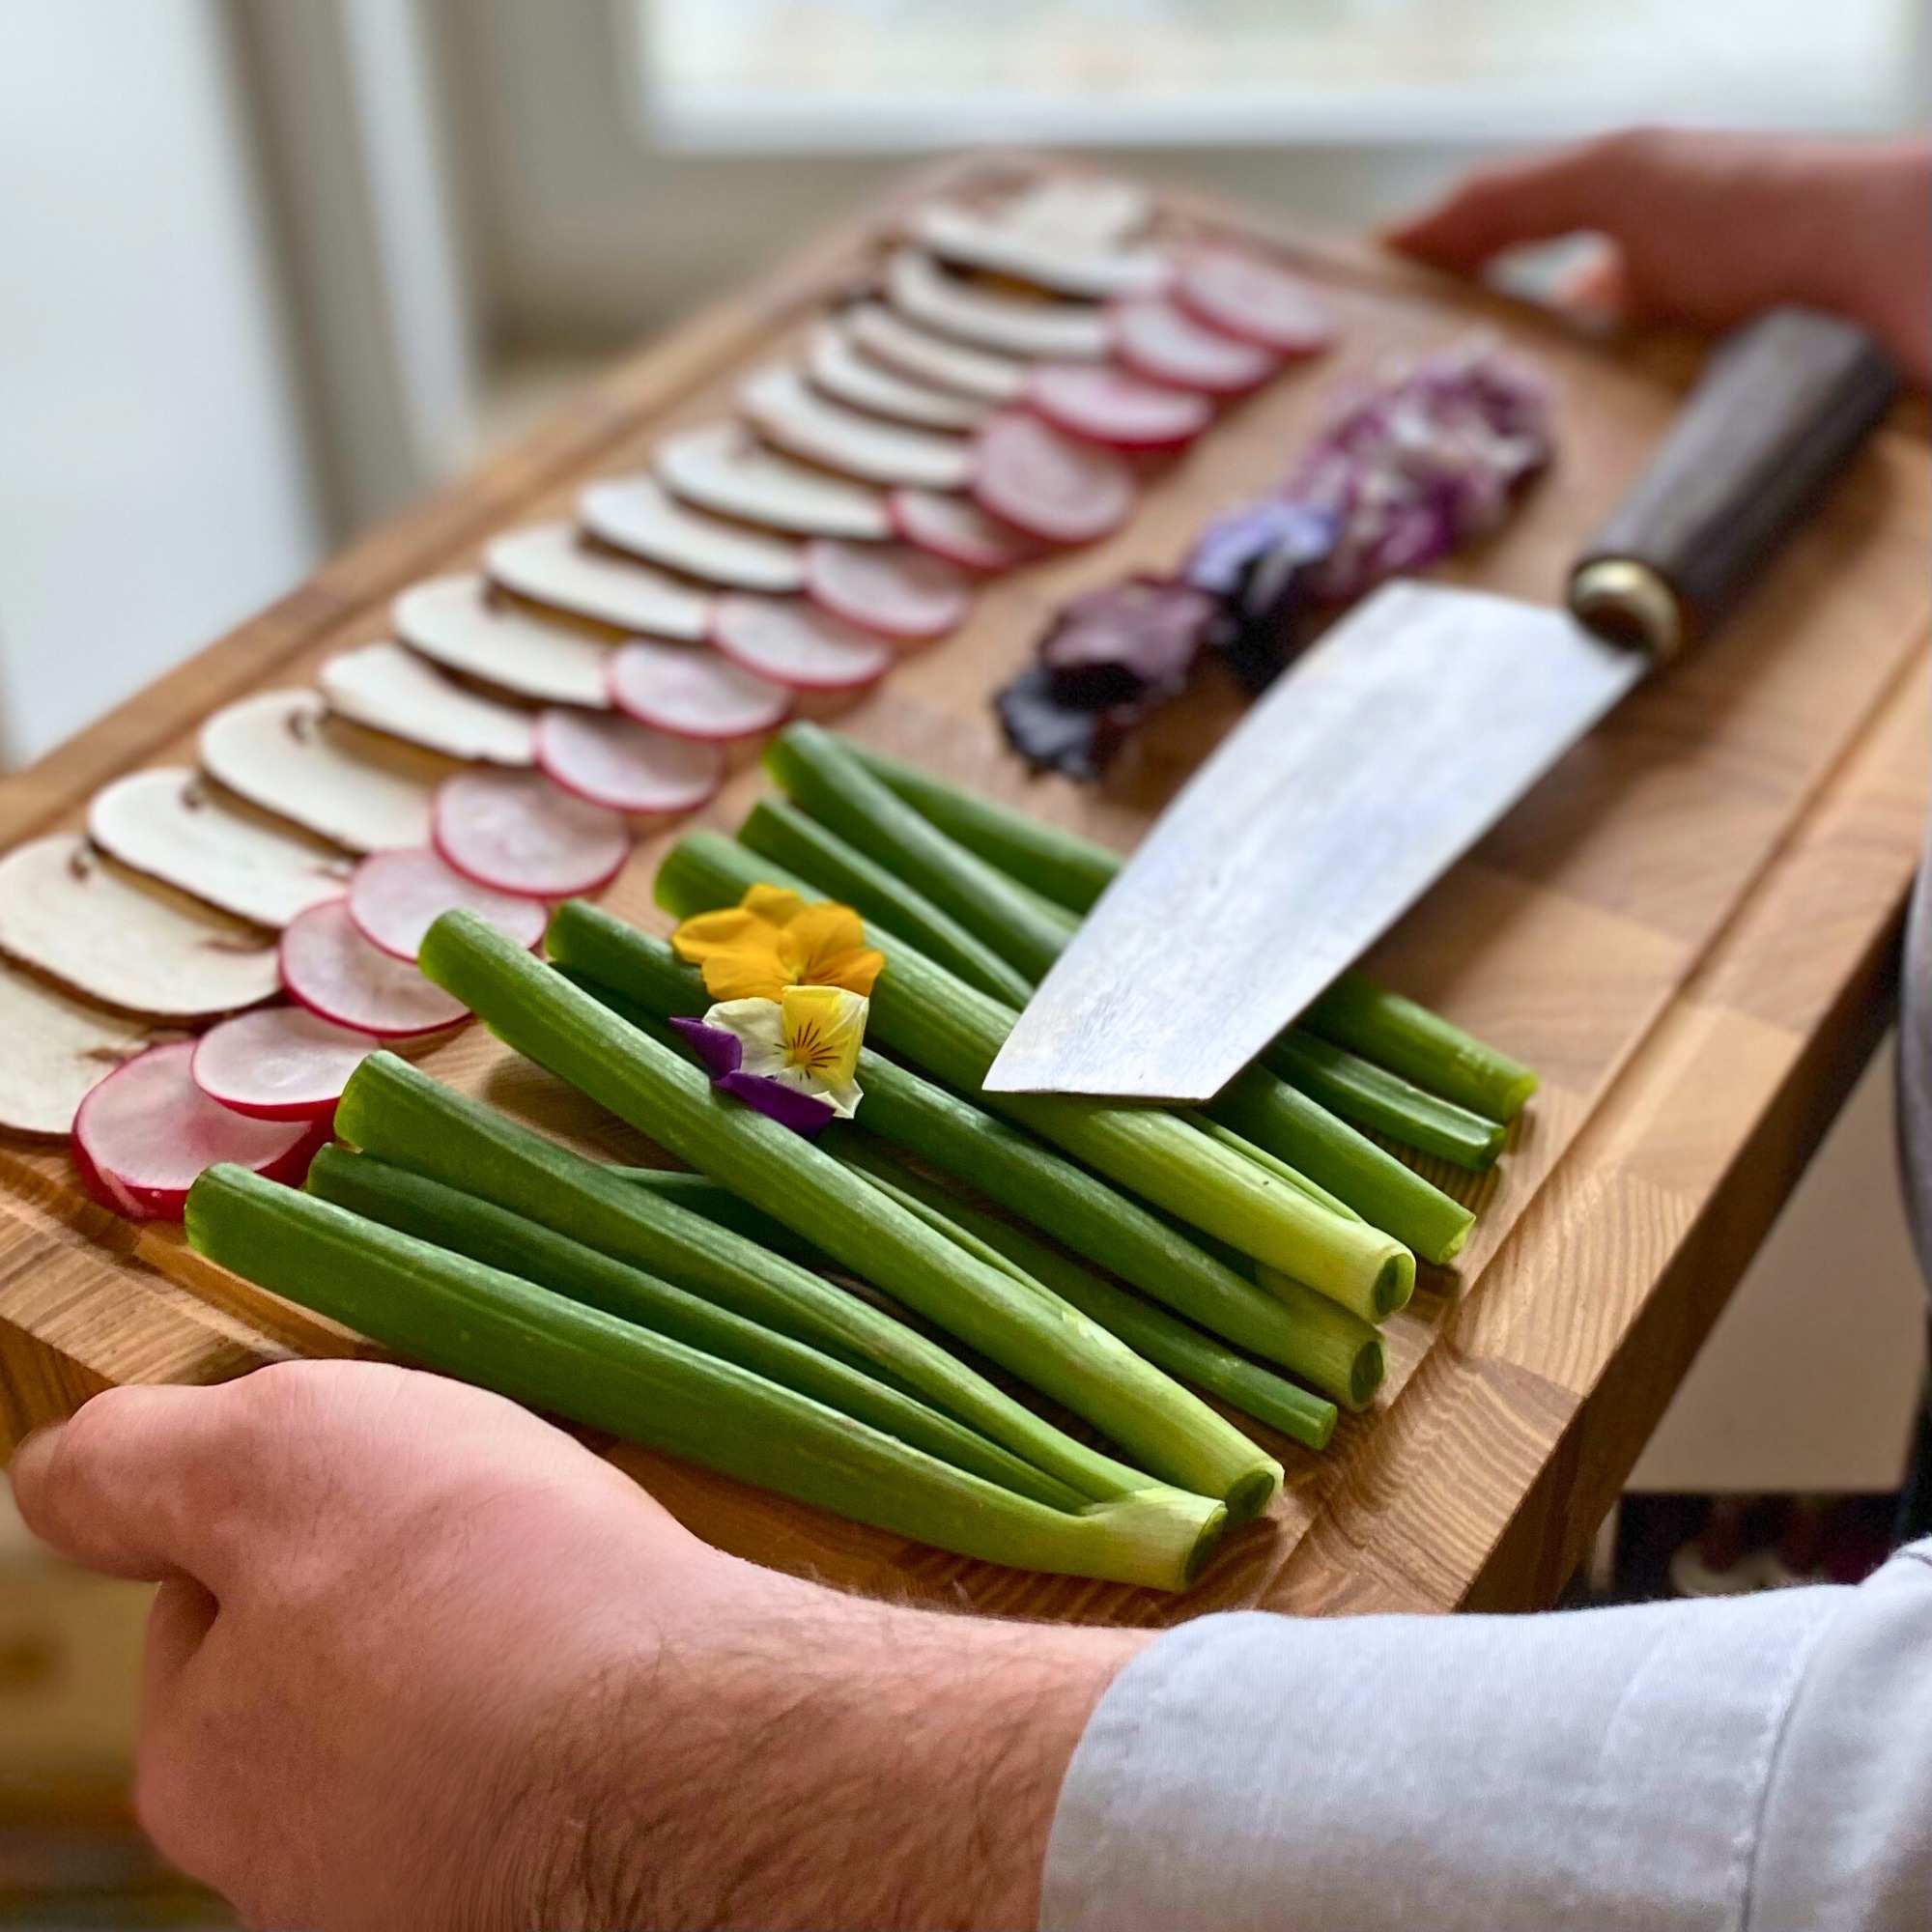 Die Messer sind gewetzt und die Zutaten fein geschnitten – wir sind bereit für ein köstliches Wochenende! 🔪🍅 
Wer steht auch schon in den Startlöchern, um kulinarische Meisterwerke zu kreieren? 

#authenticblades #scharfeMesser #authentischkochen #vietnam #Küchenmesser #VorbereitungIstAlles #WeekendVibes #Küchenzauber